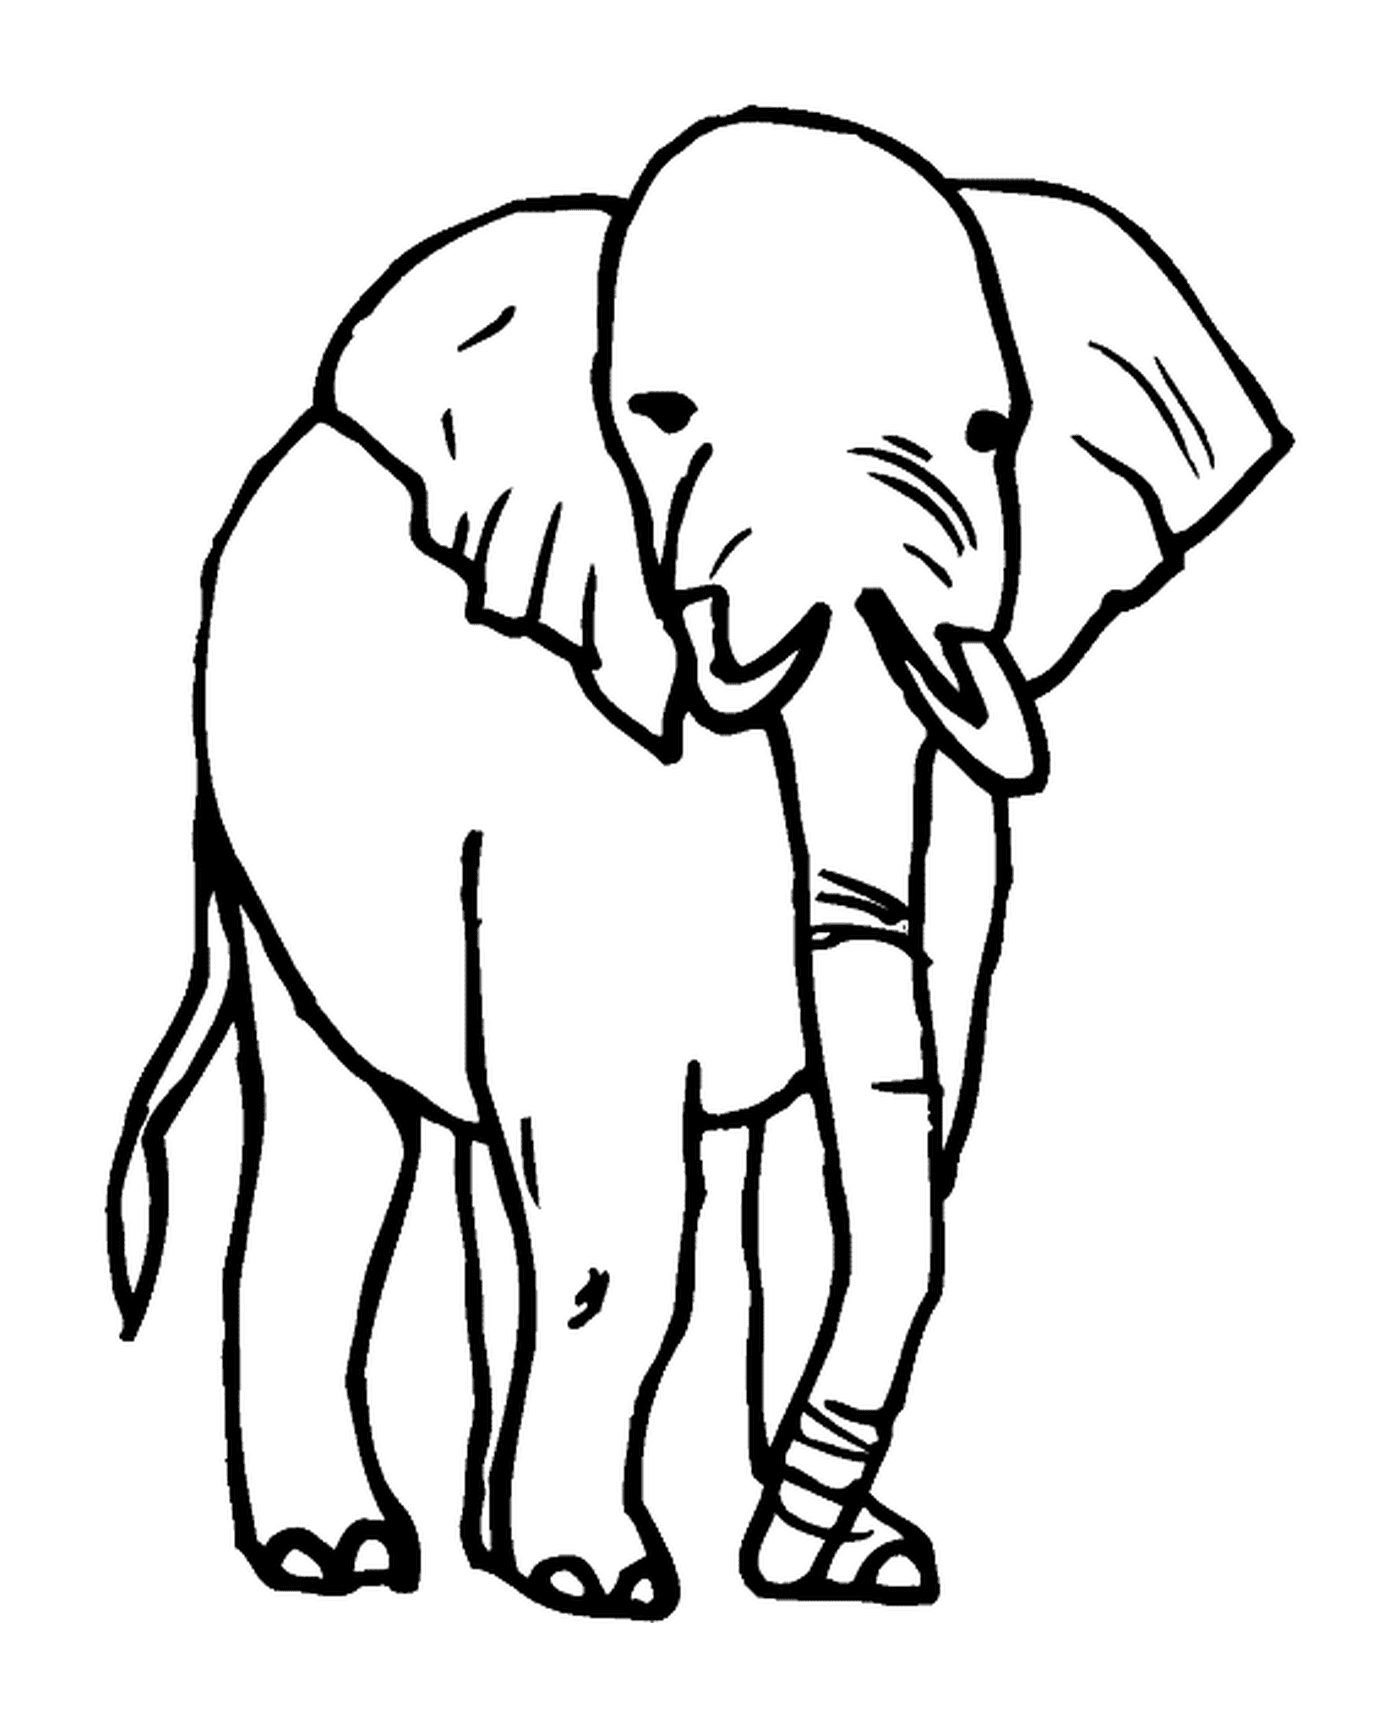  हाथी चित्र 